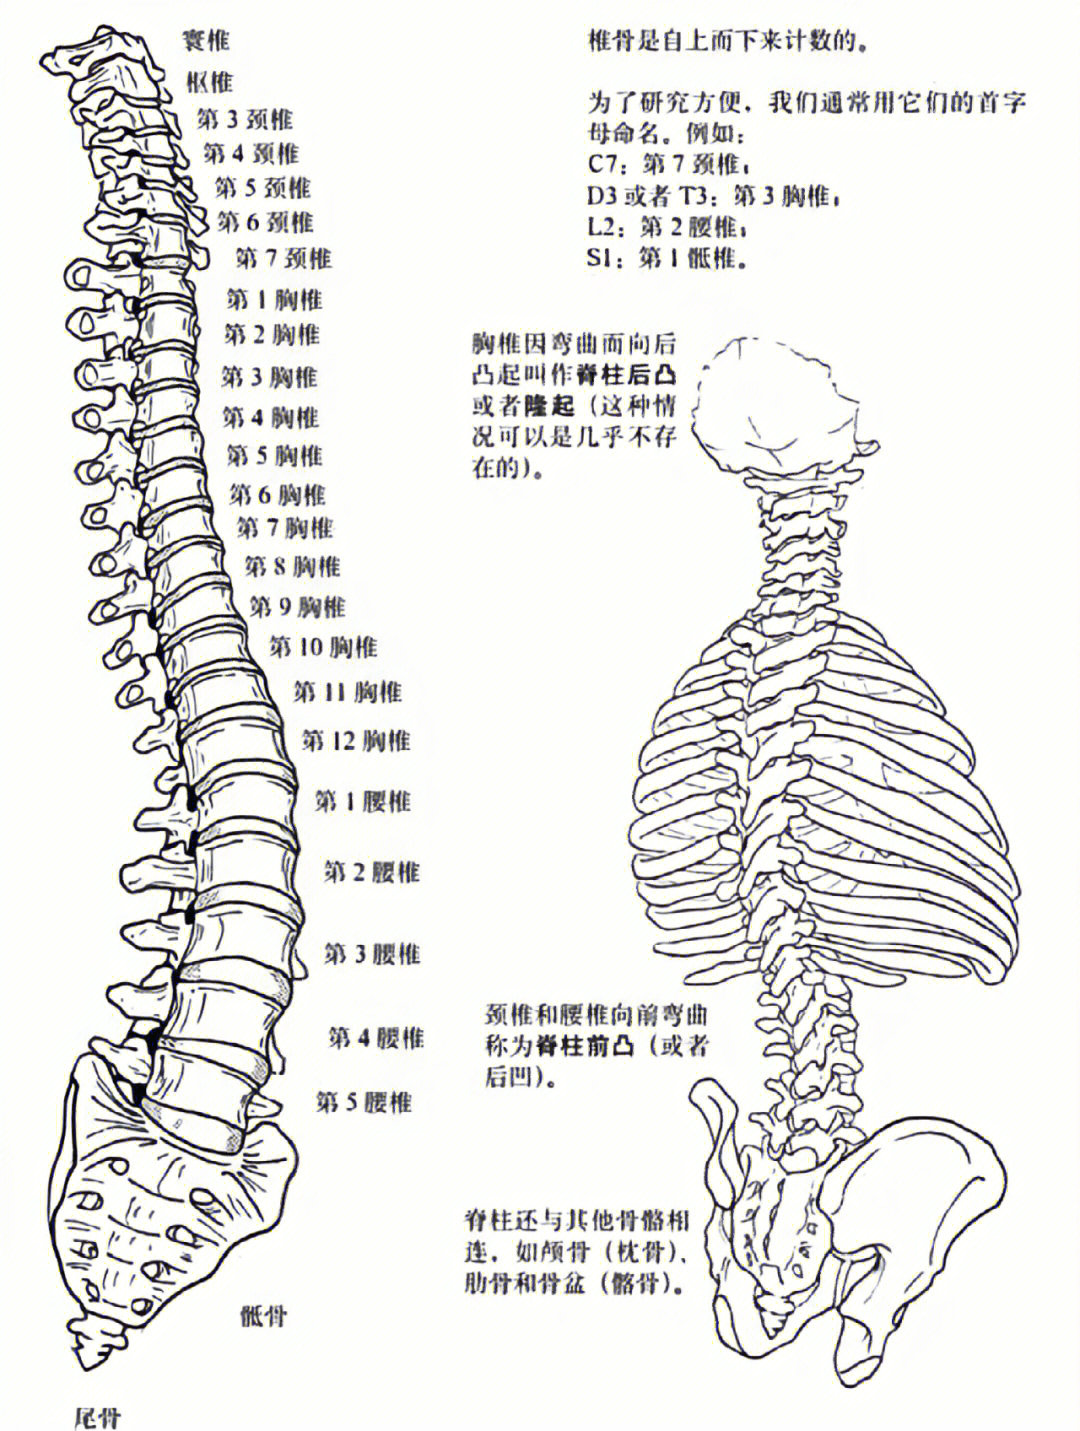 是我们人体骨骼中最重要的部分,由26块椎骨组成包括7节颈椎,12节胸椎